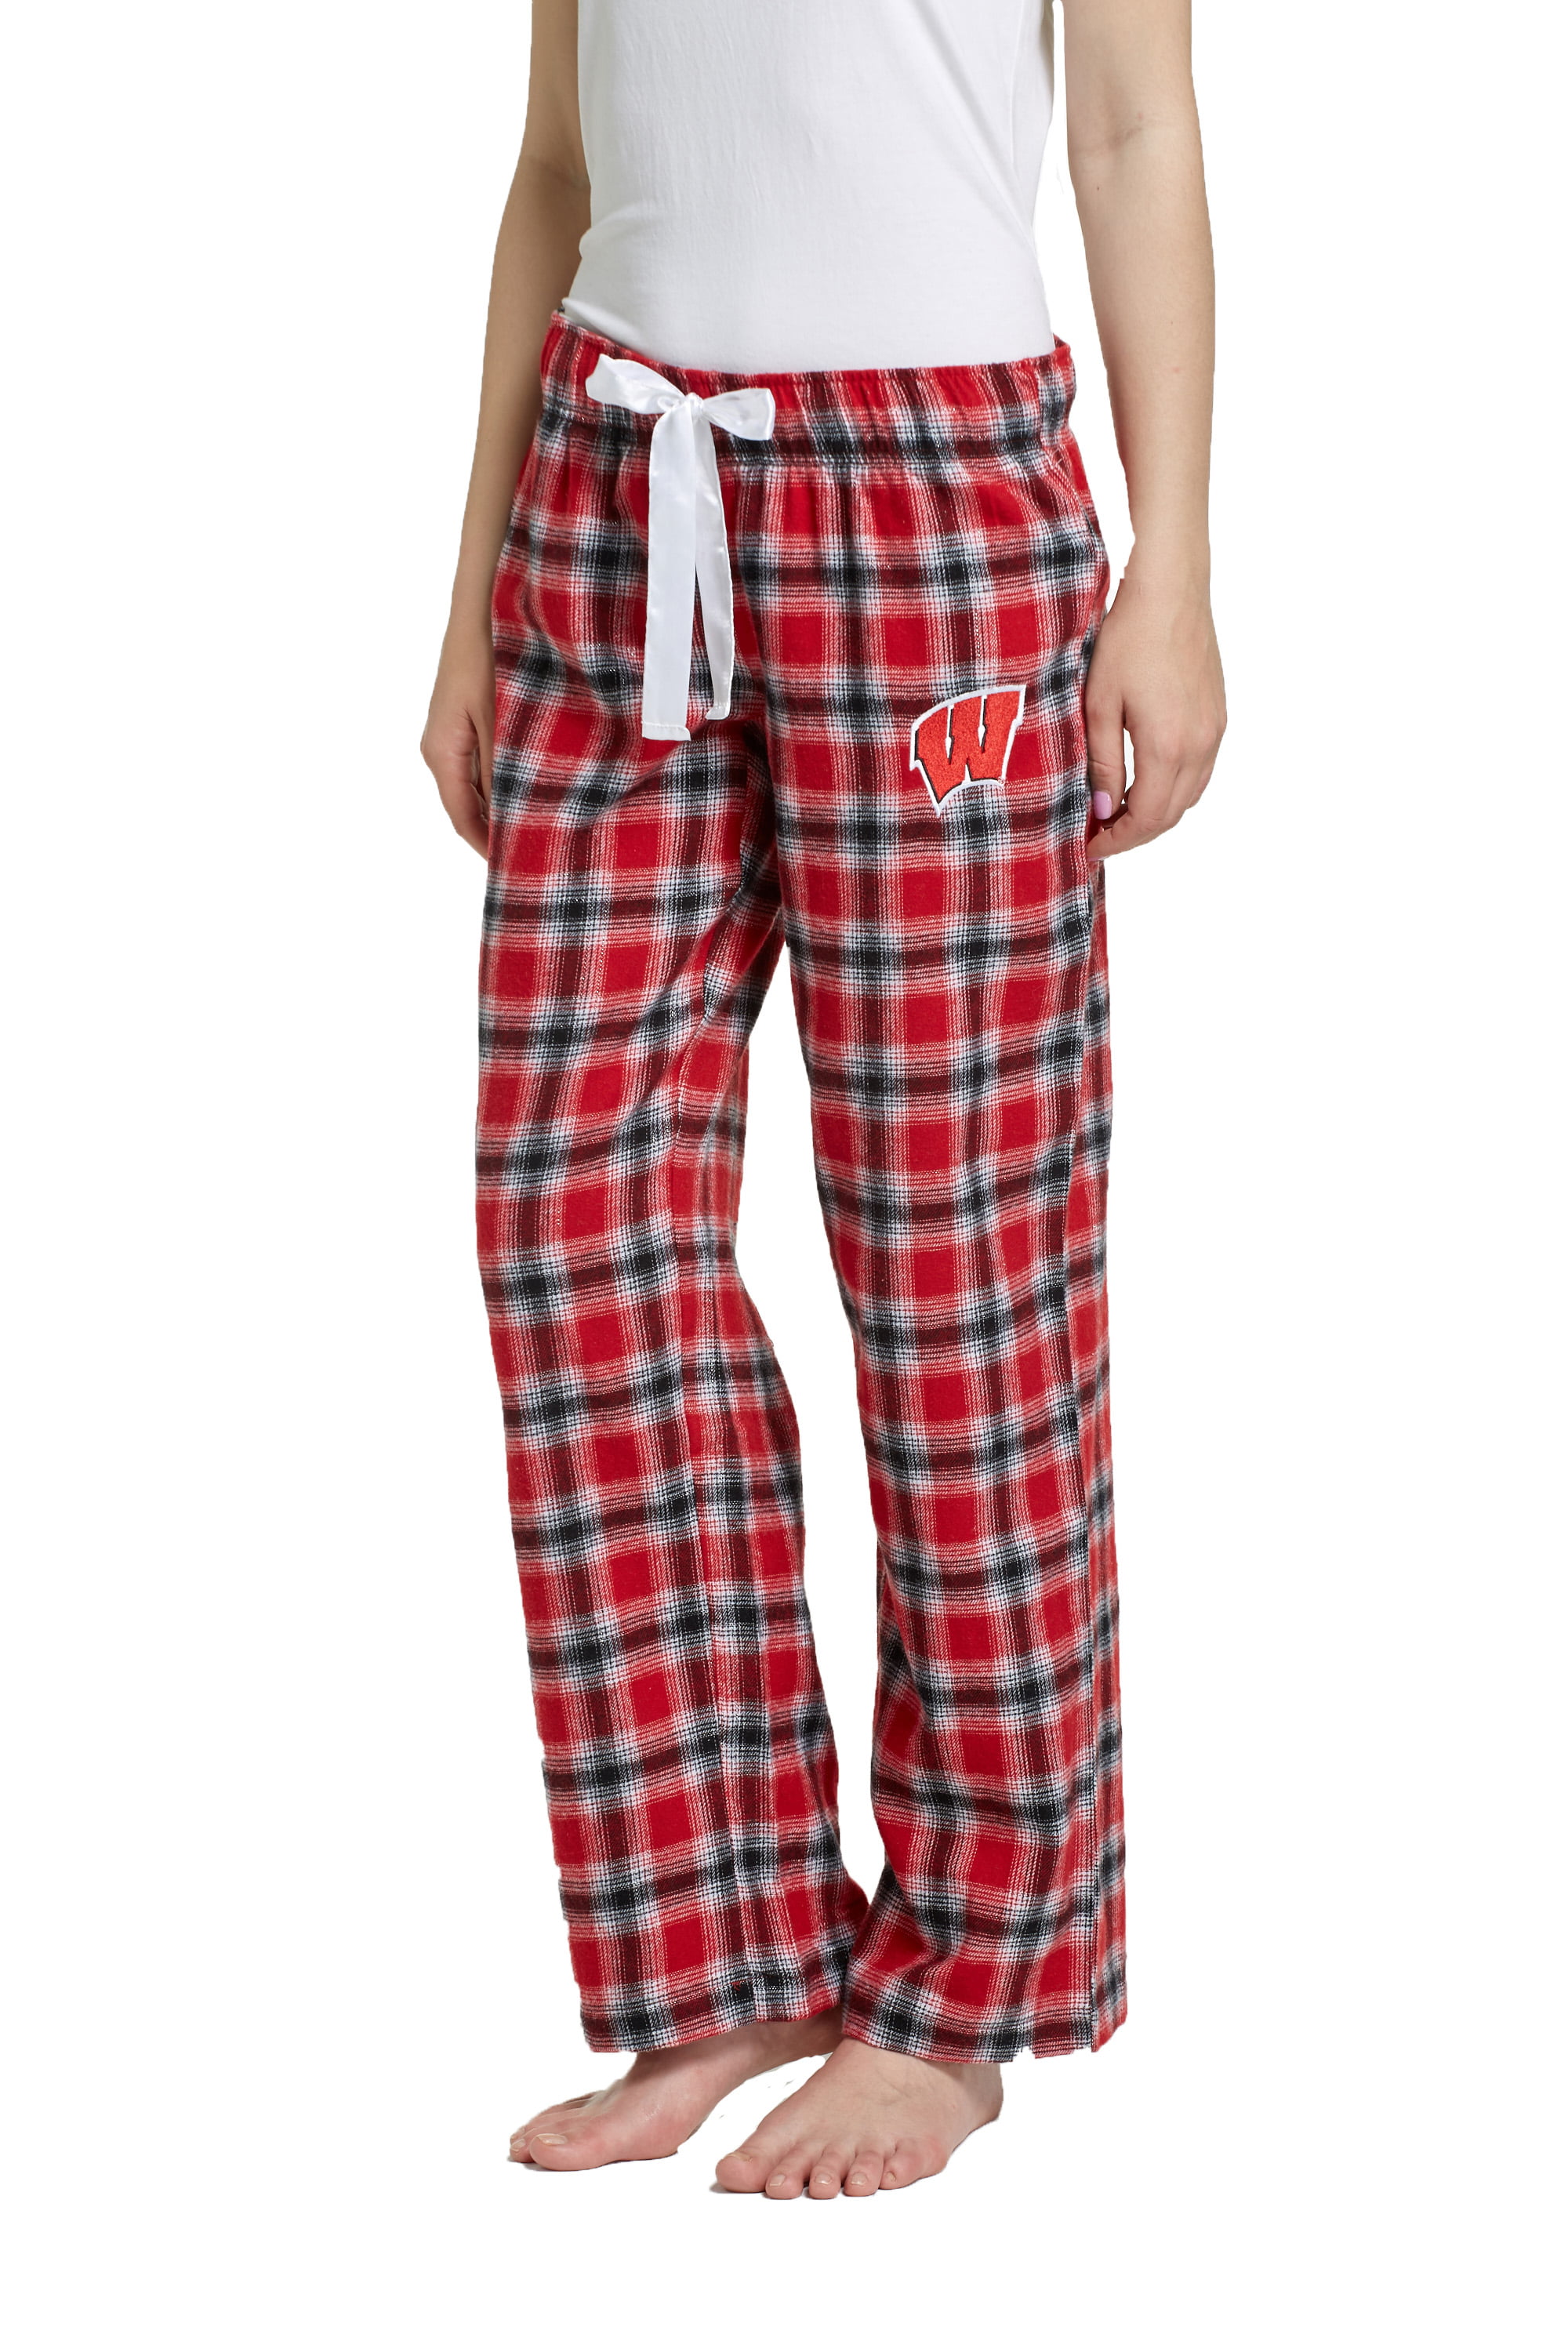 NCAA Wisconsin Badgers Tenacity Ladies' Flannel Pant - Walmart.com ...